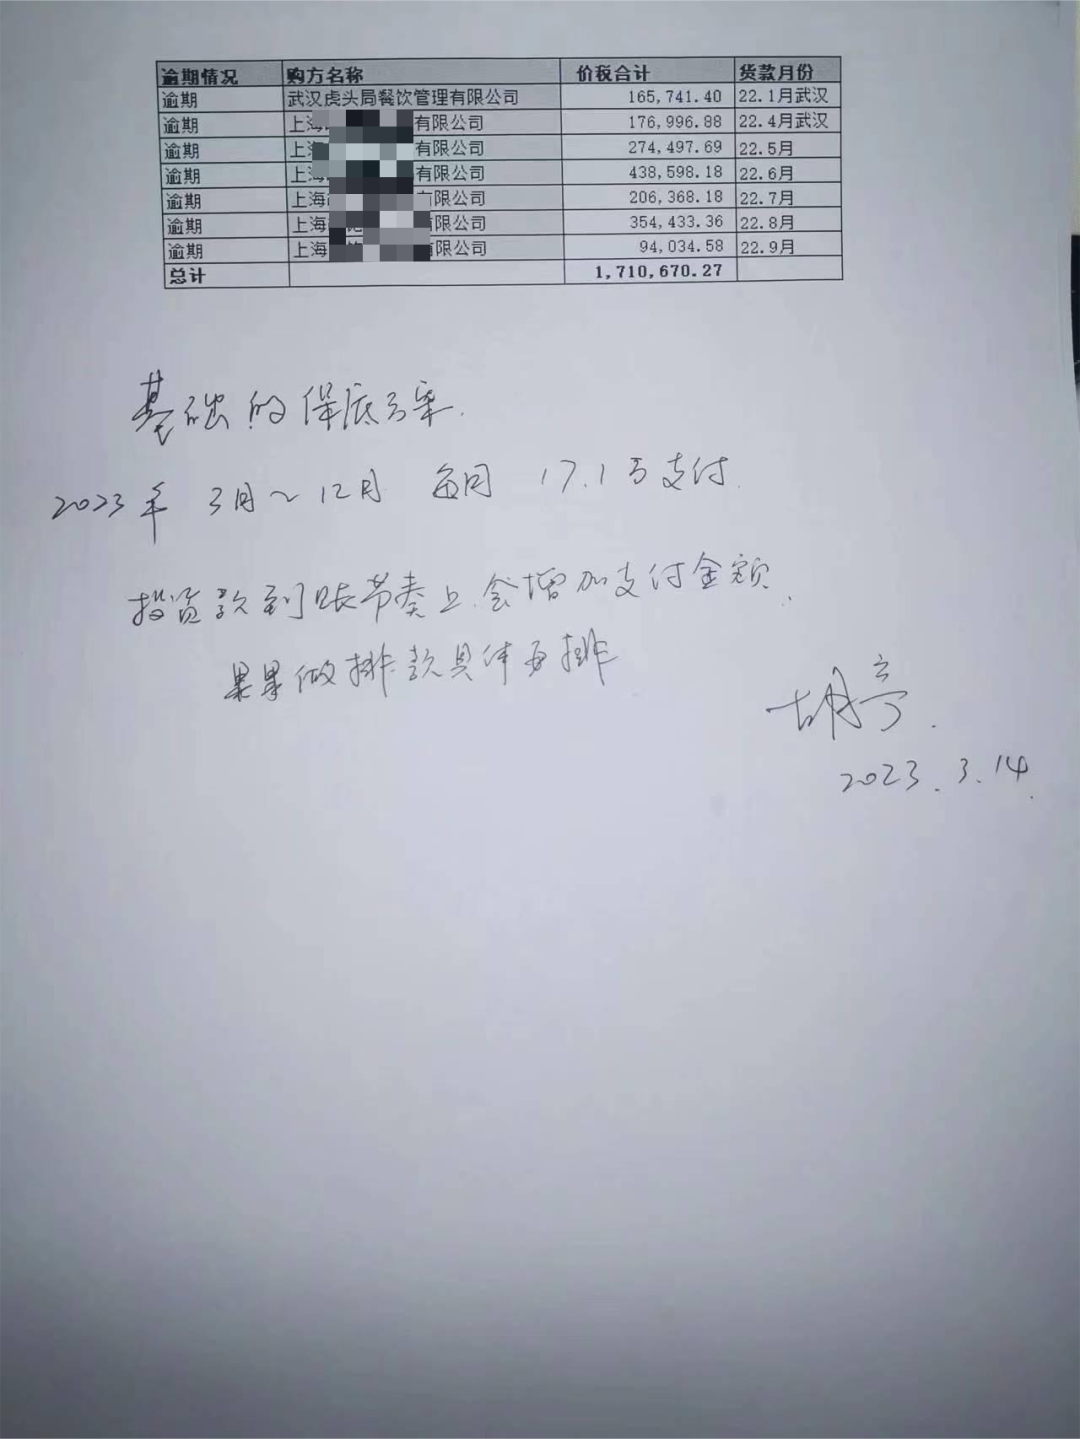 图注：玲冬向Tech星球出示的一张胡亭亲笔写的，给上海一家耗材用品供应商写的排款计划，玲冬称目前该公司已起诉。